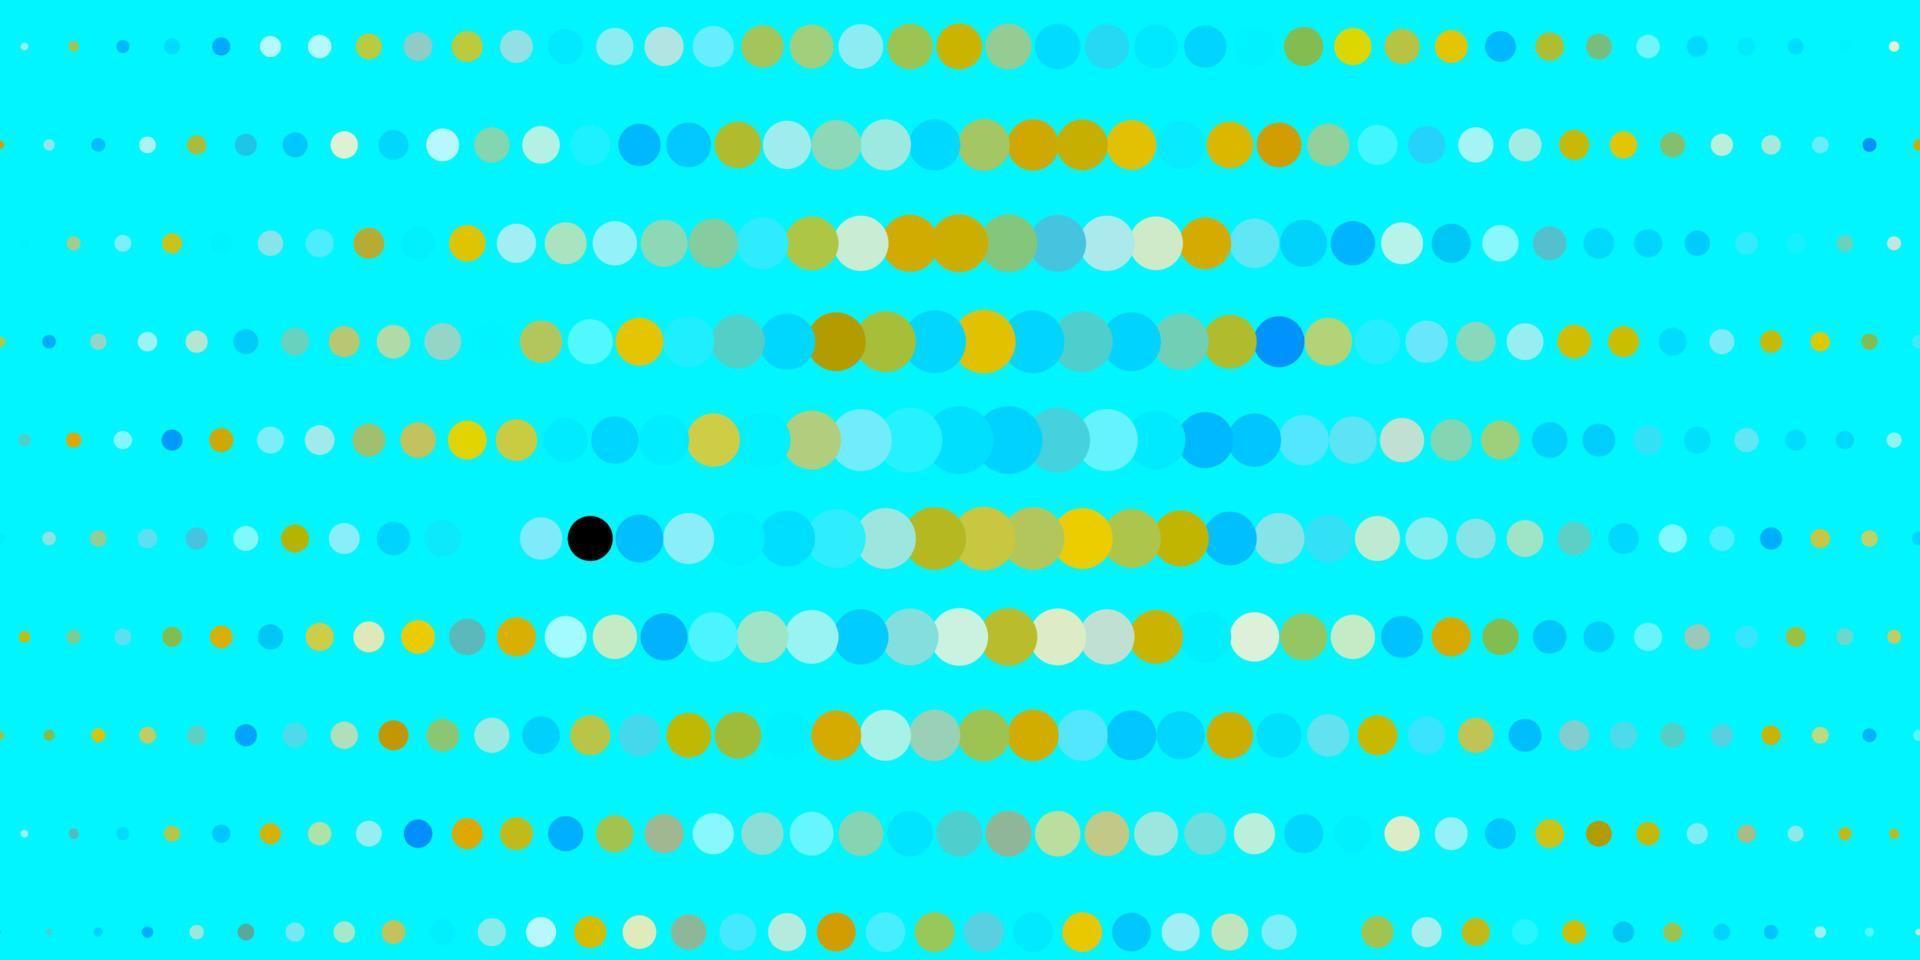 padrão de vetor azul claro, amarelo com círculos.